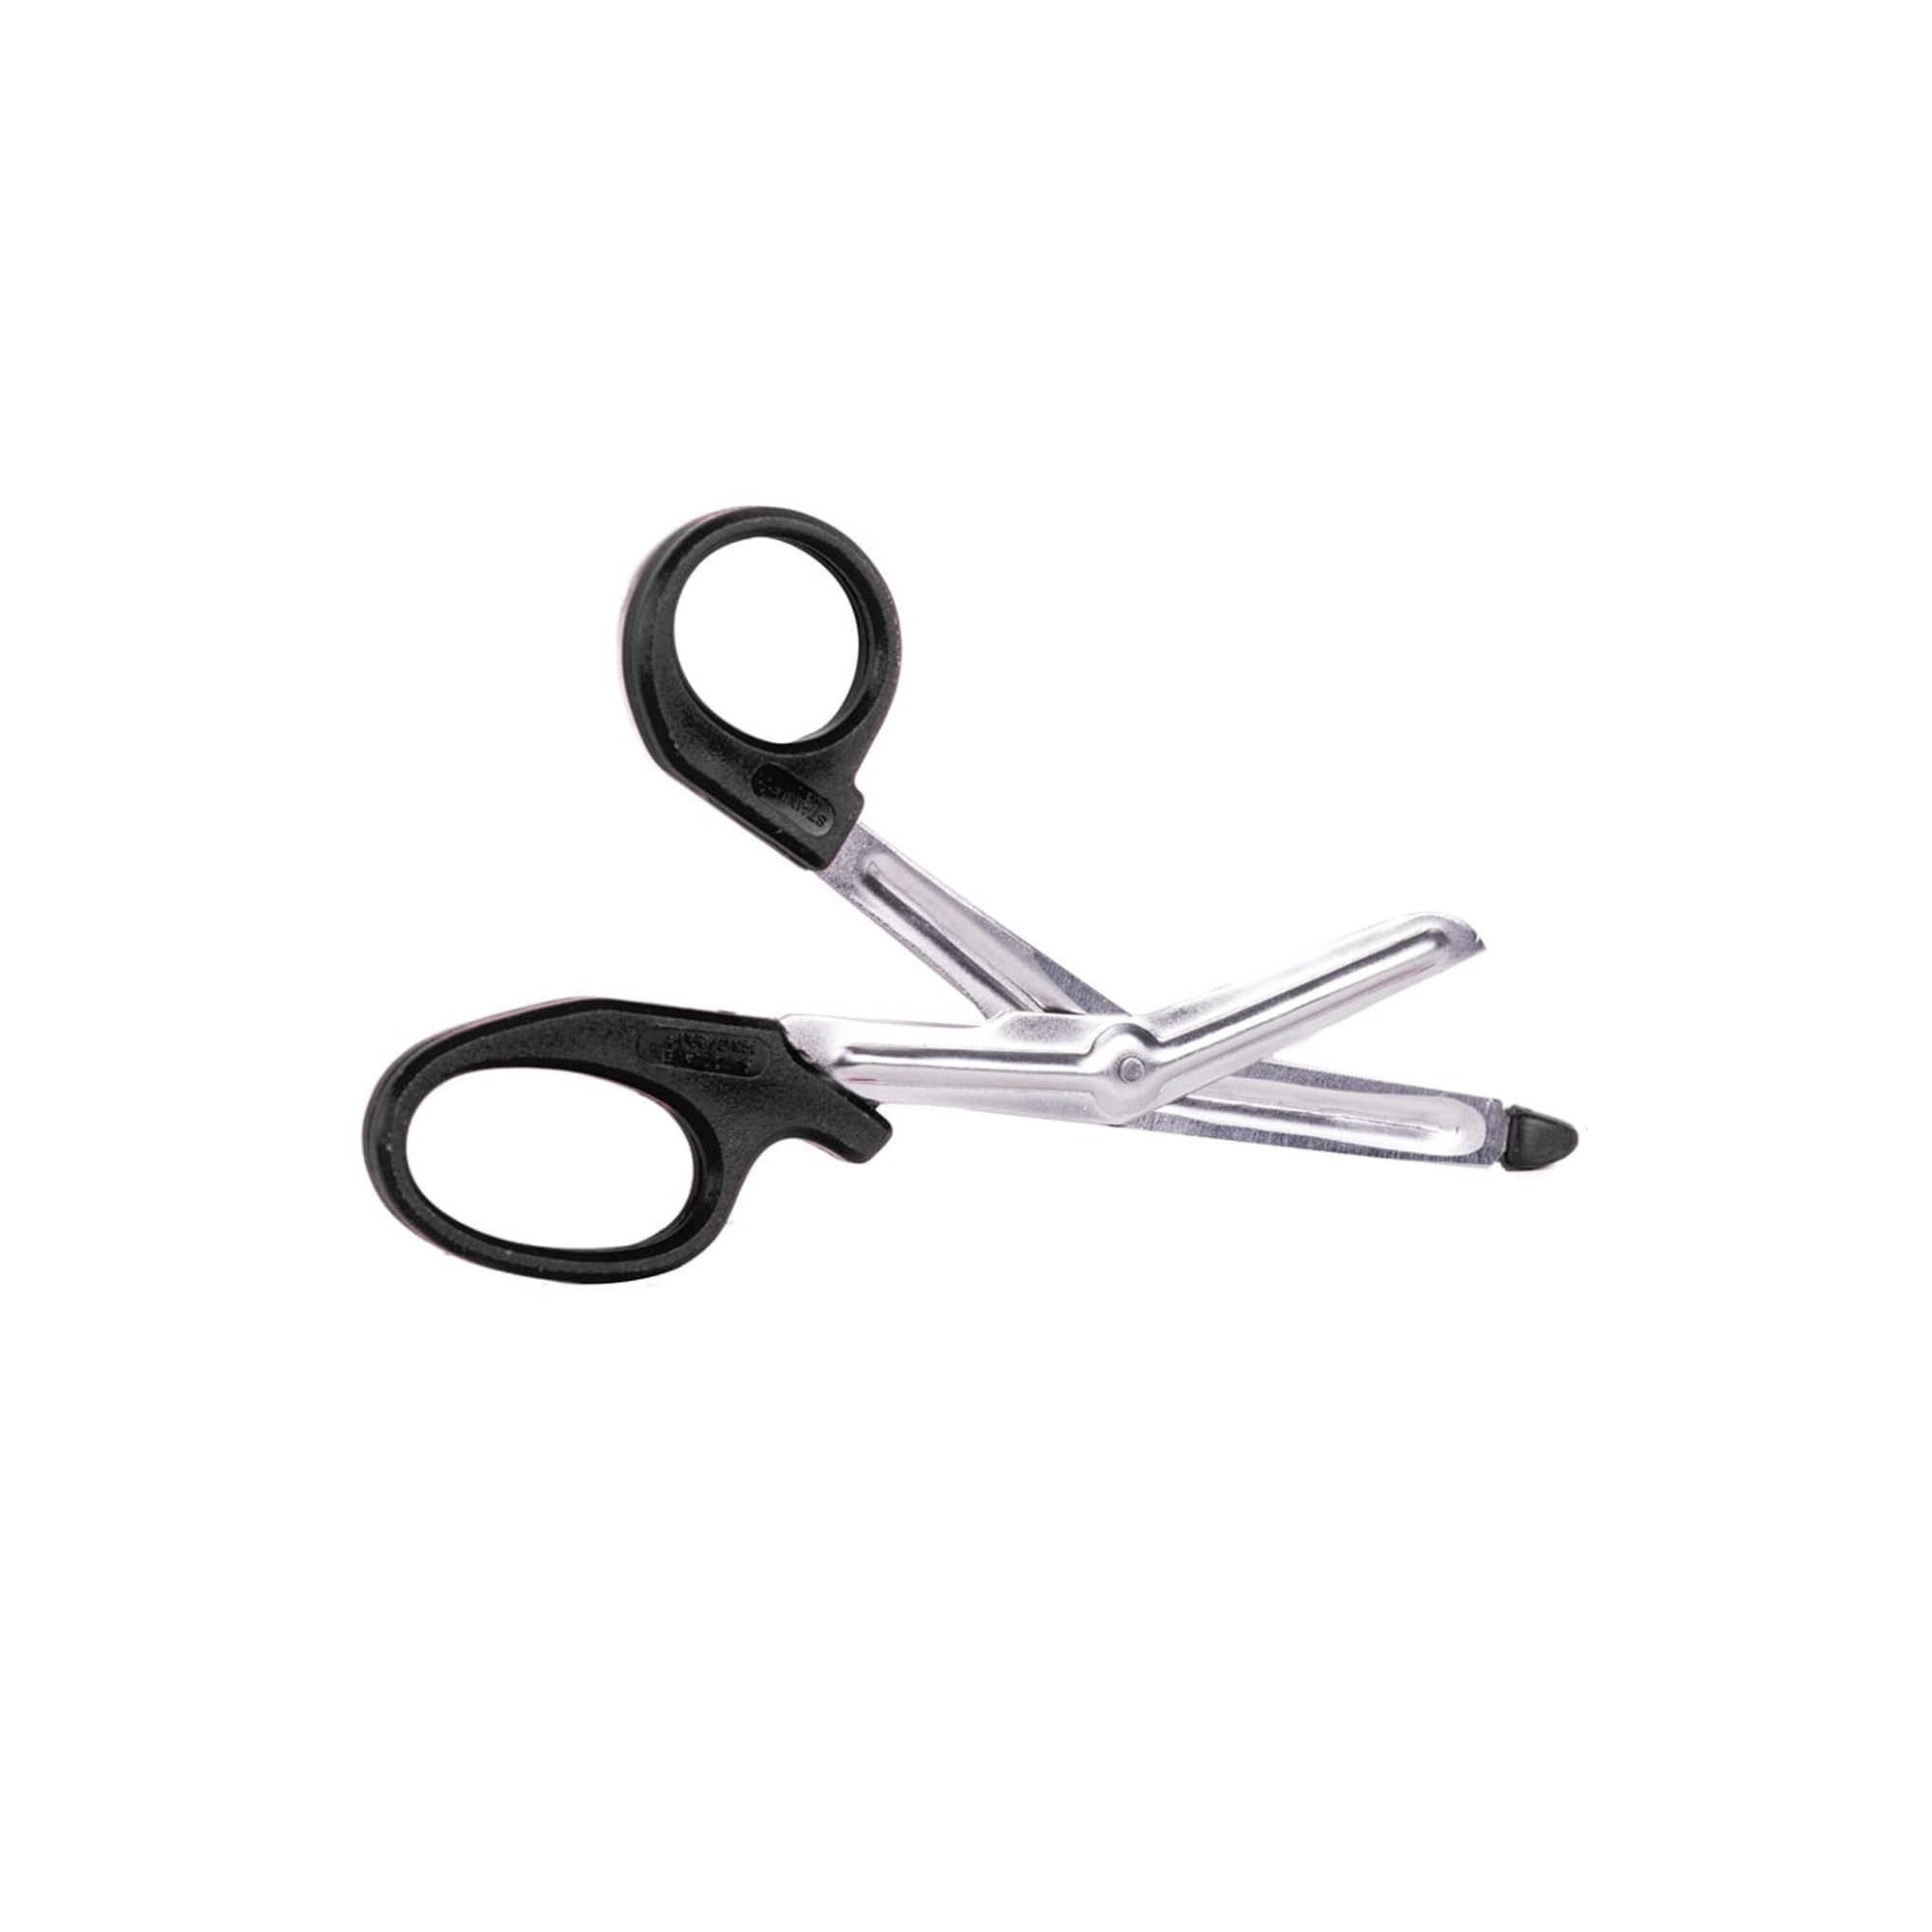 Tough Cut Scissor (Black Handle) 5.5" - Each